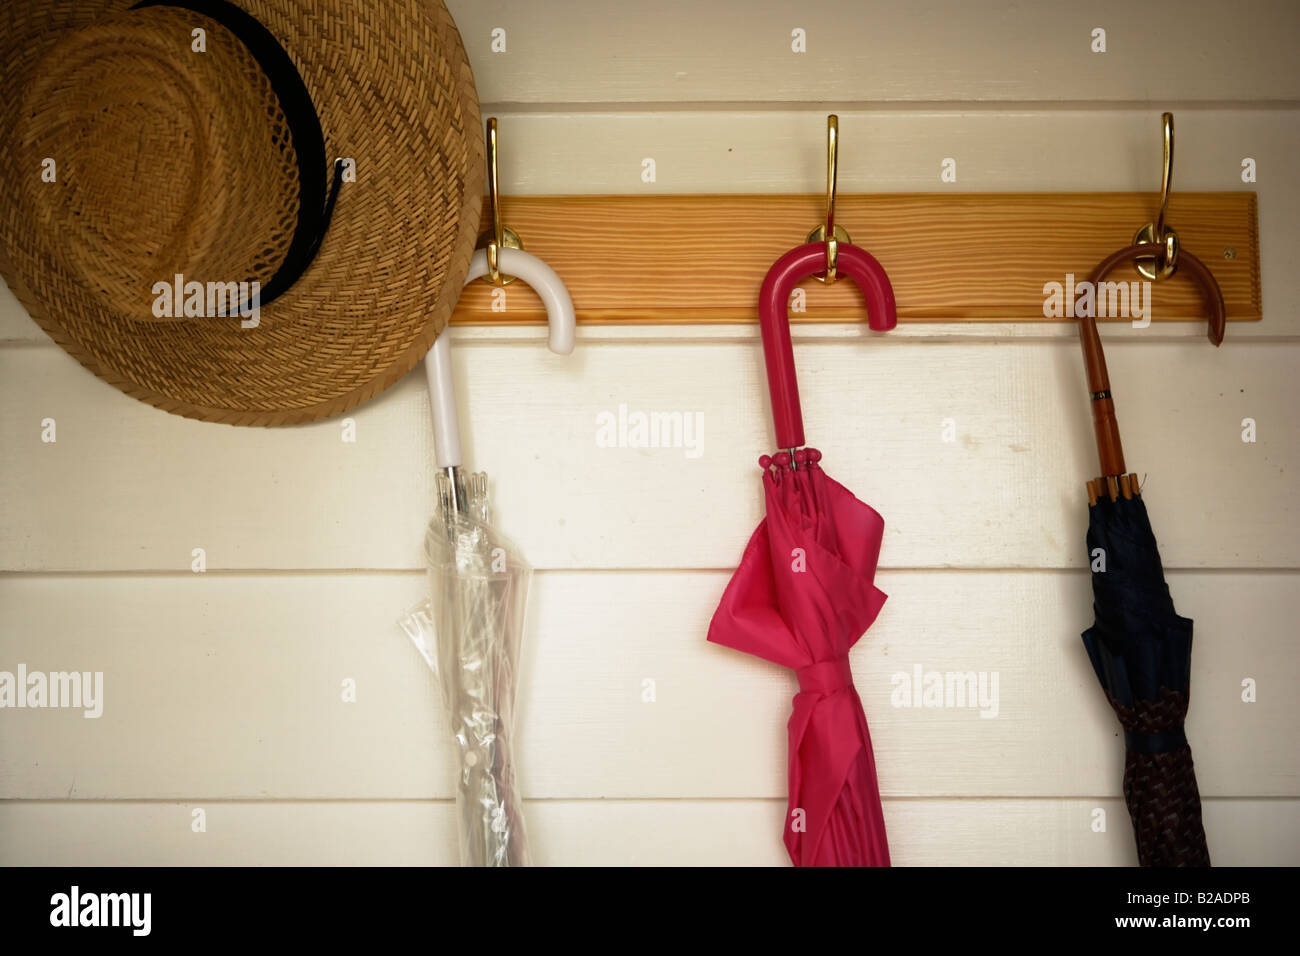 Sonnenschirme und Strohhut von Kleiderständer hängen Stockfoto